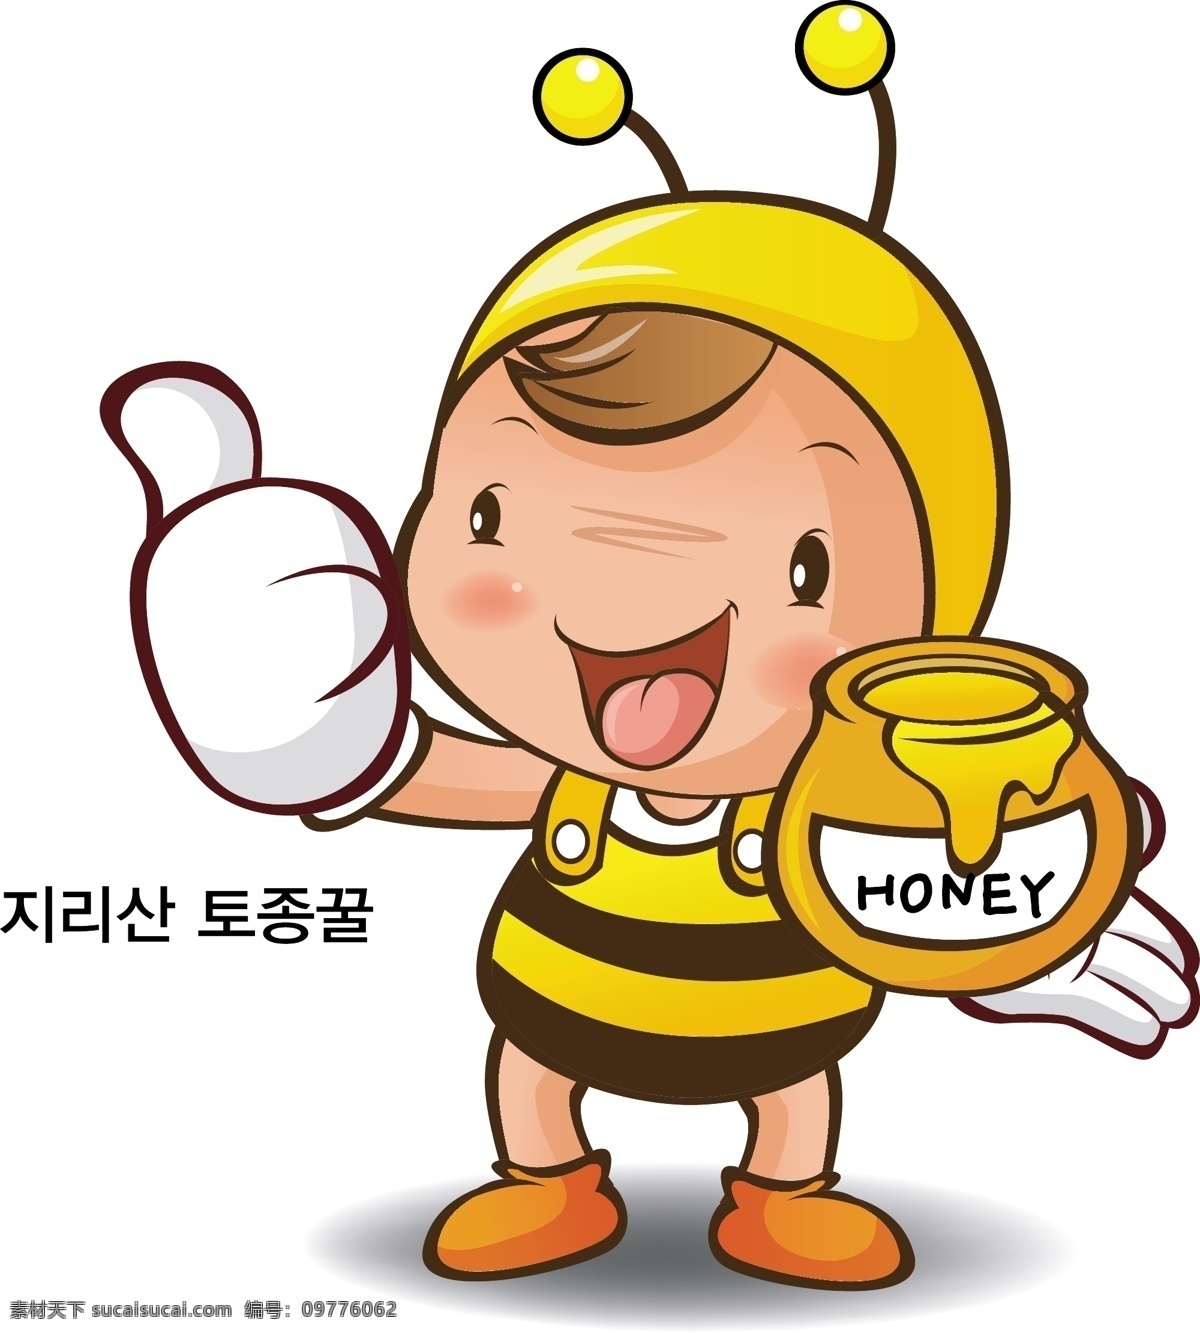 logo 动物 蜂蜜 卡通蜜蜂 卡通设计 蜜蜂 生活百科 矢量图 卡通 适量 图 矢量 模板下载 表示 水果蔬菜宝宝 日常生活